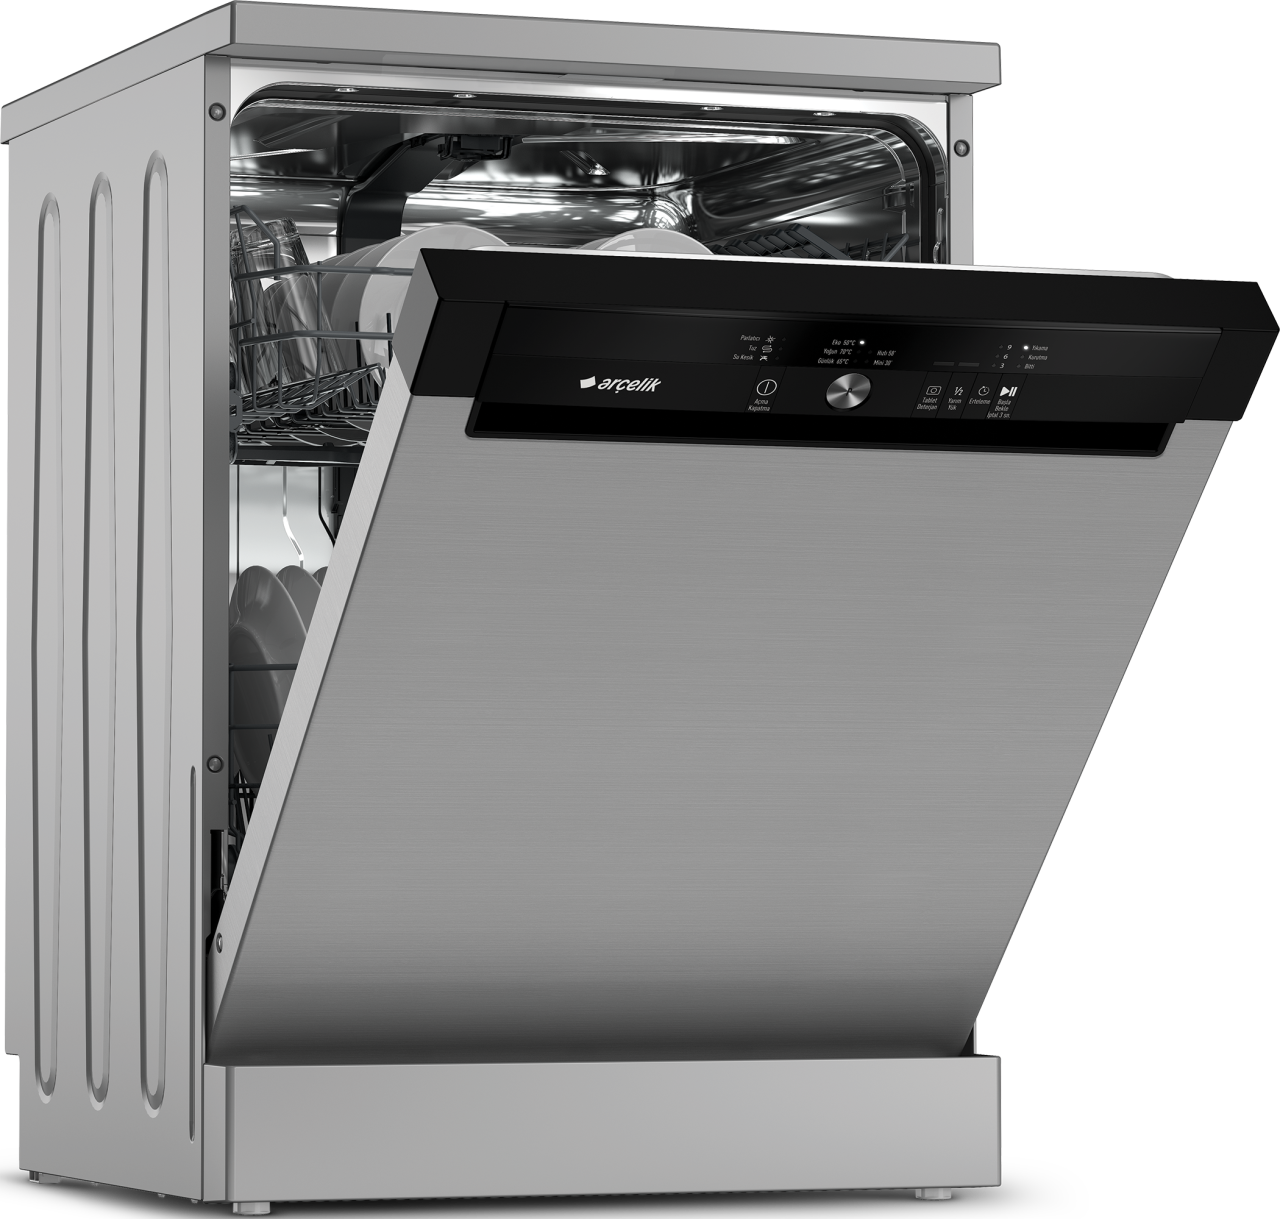 Арчелик посудомоечная машина. Посудомоечная машина Arcelik 6343 дисплей. Arcelik посудомоечная машина Старая модель. Bulasik Mak. Посудомоечная с баком для воды